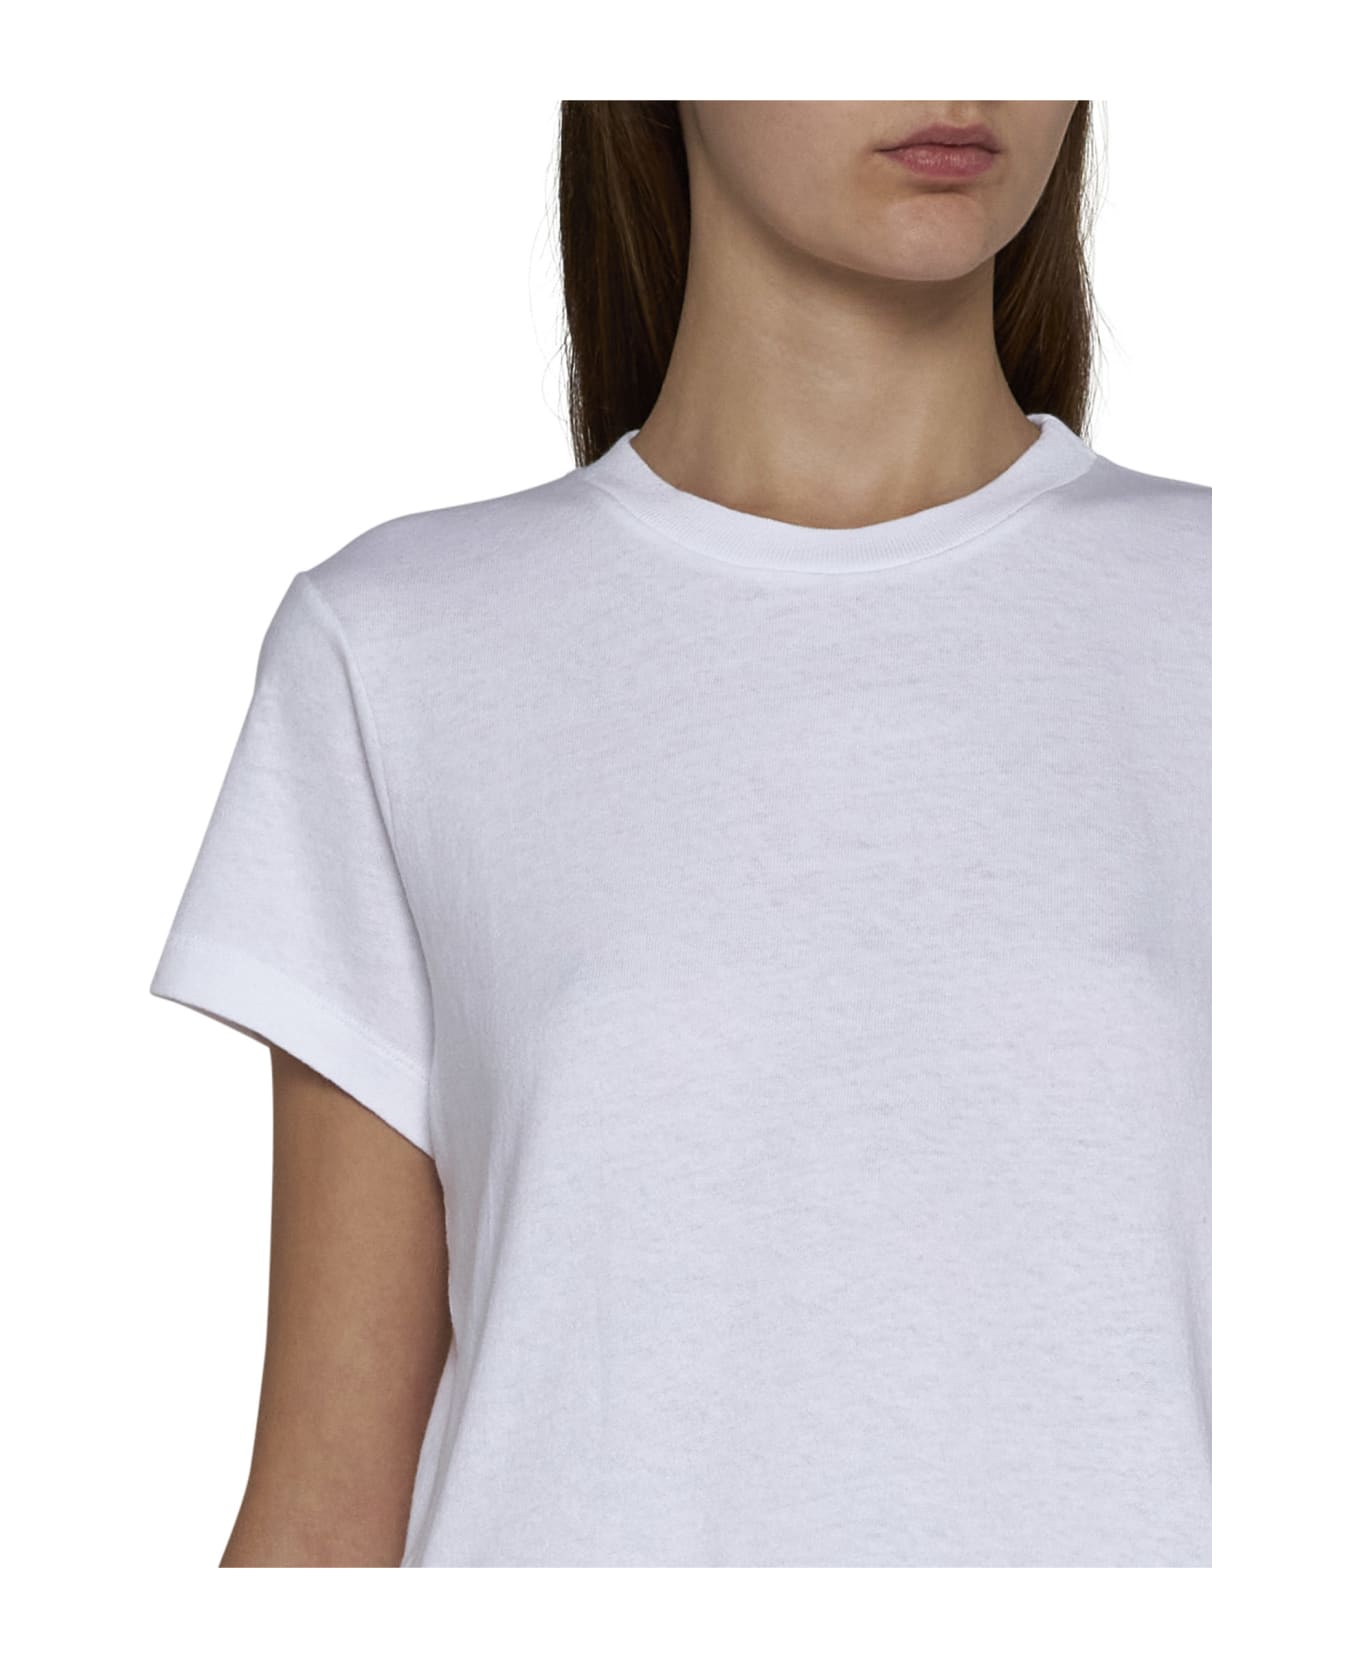 Khaite T-Shirt - White